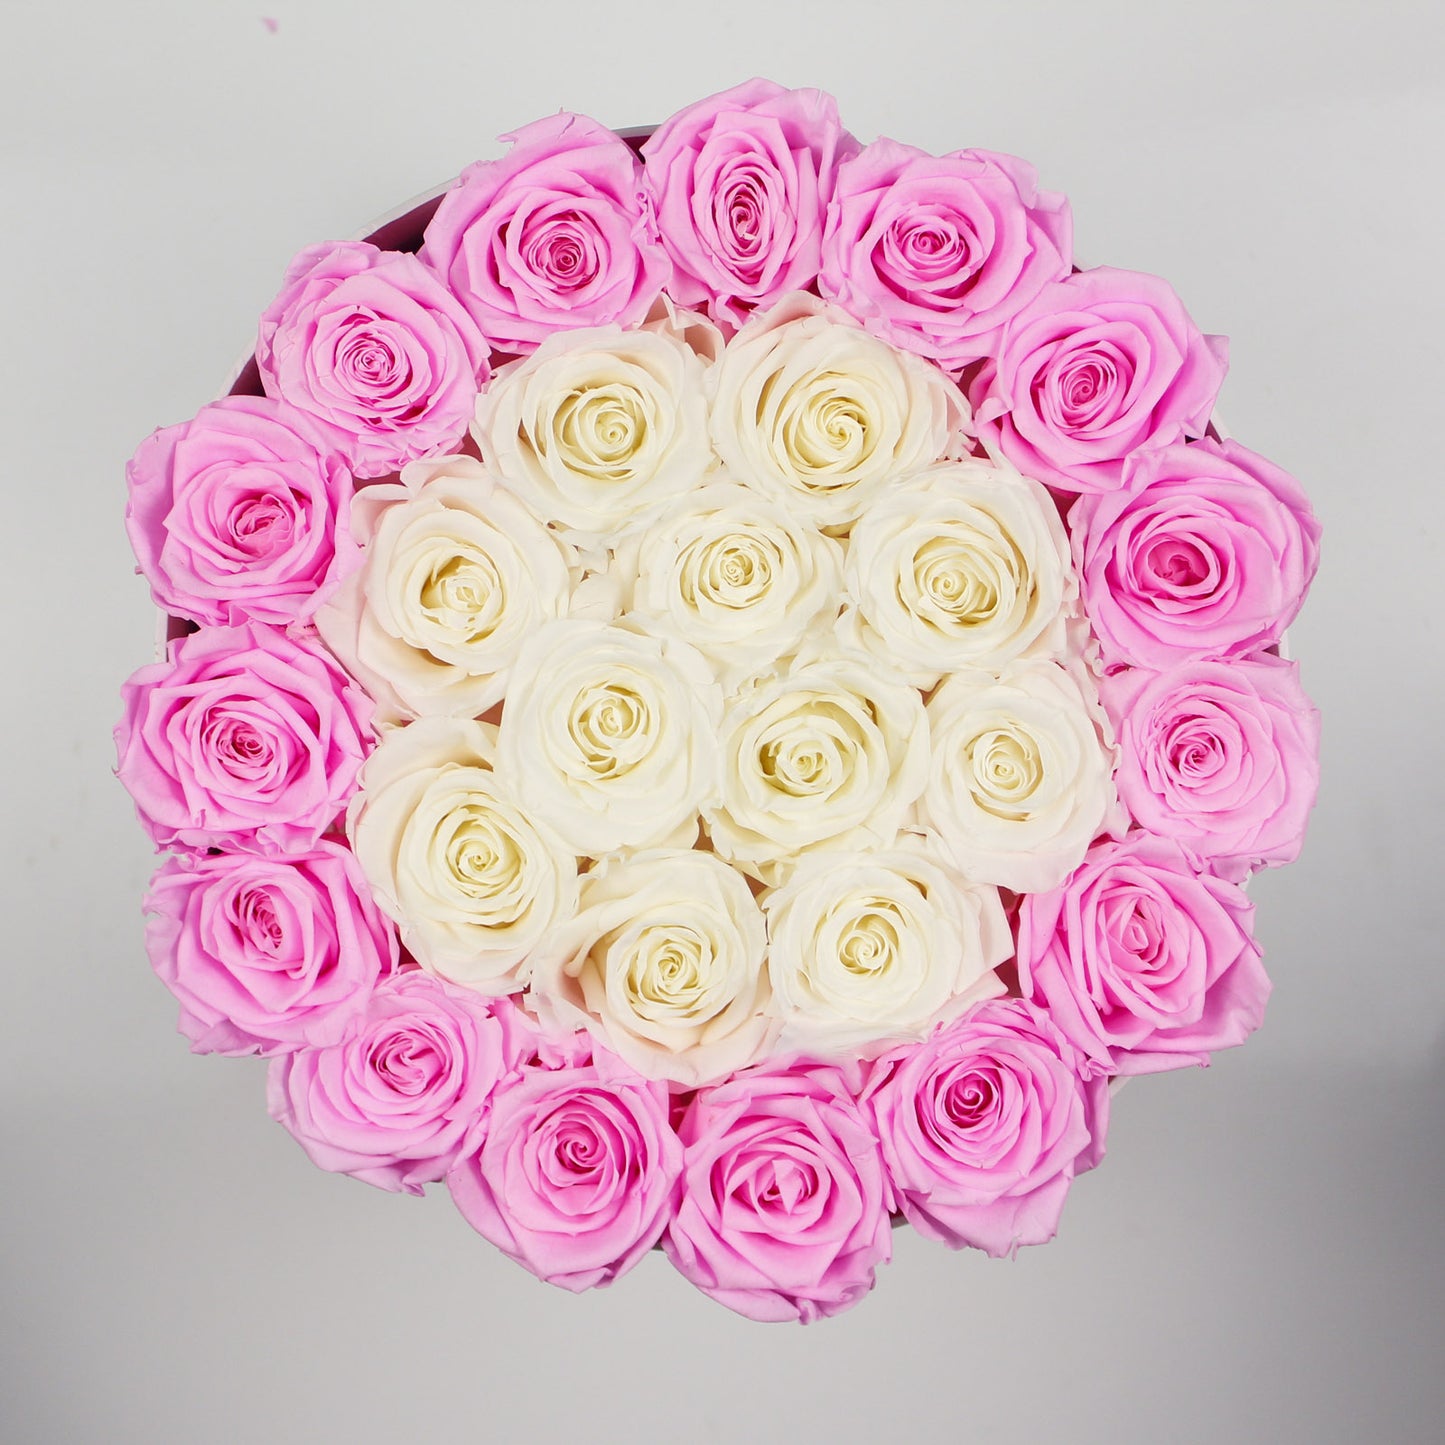 WHITE ROUND BOX | BRIGHT PINK & WHITE ROSES